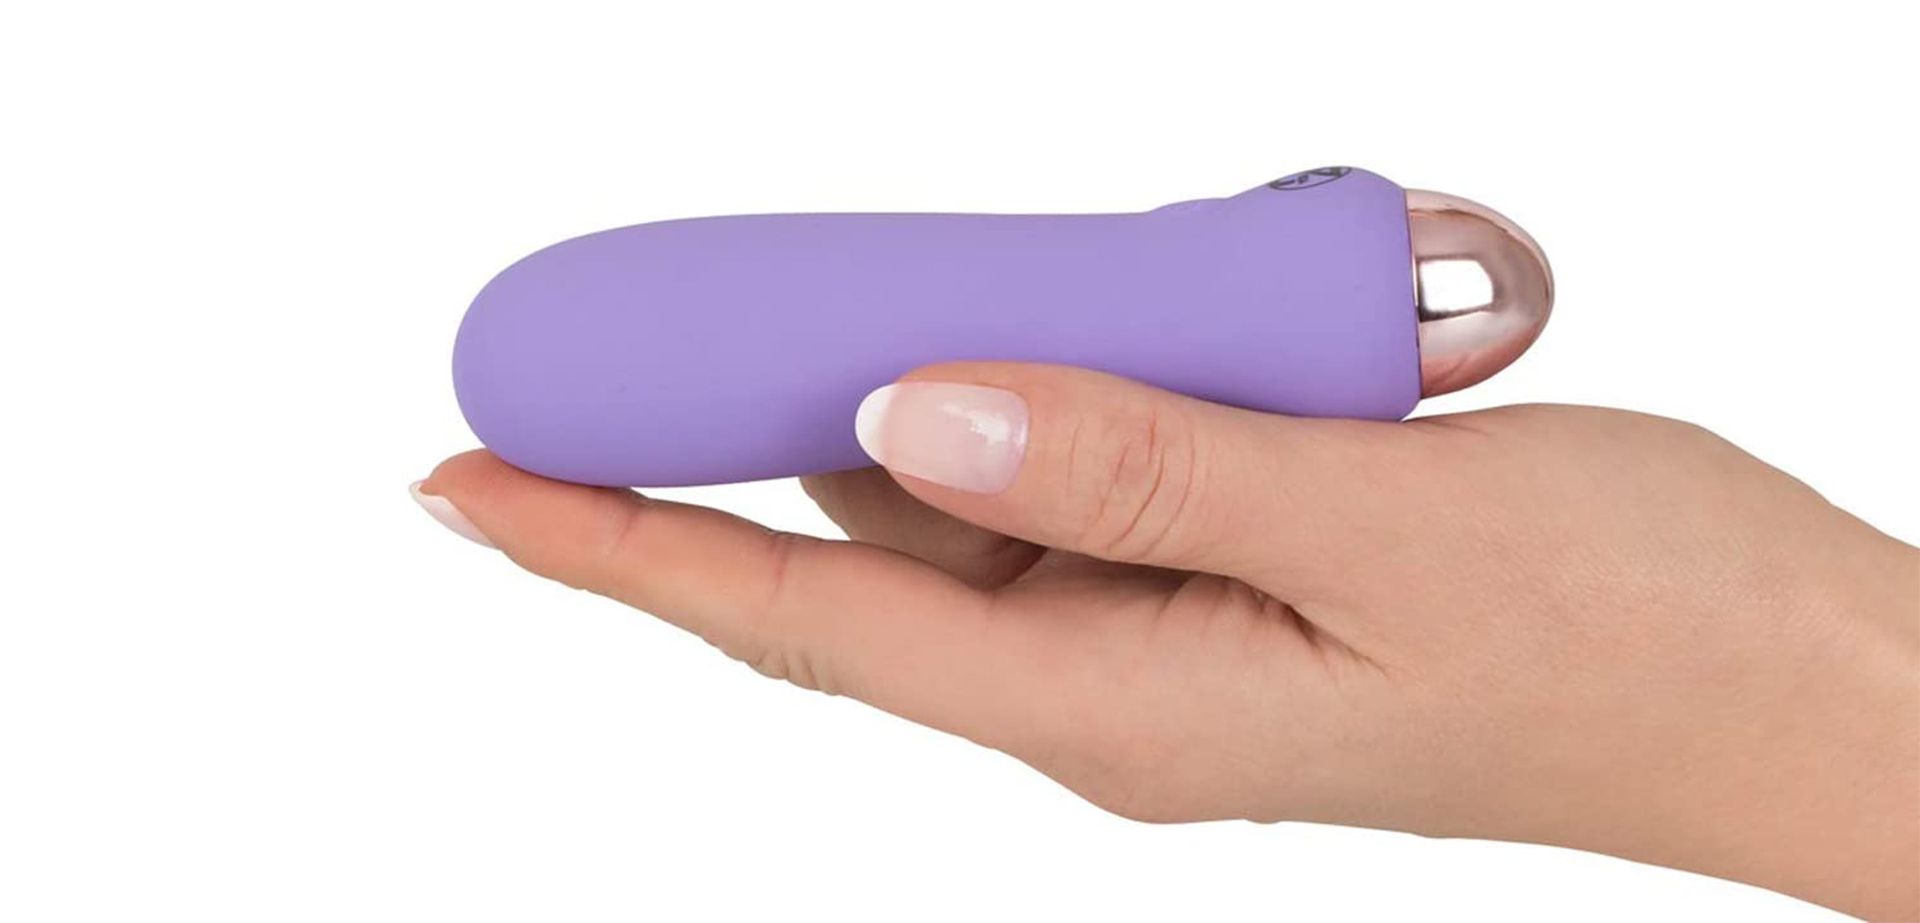 Purple Vibrator In Hand.